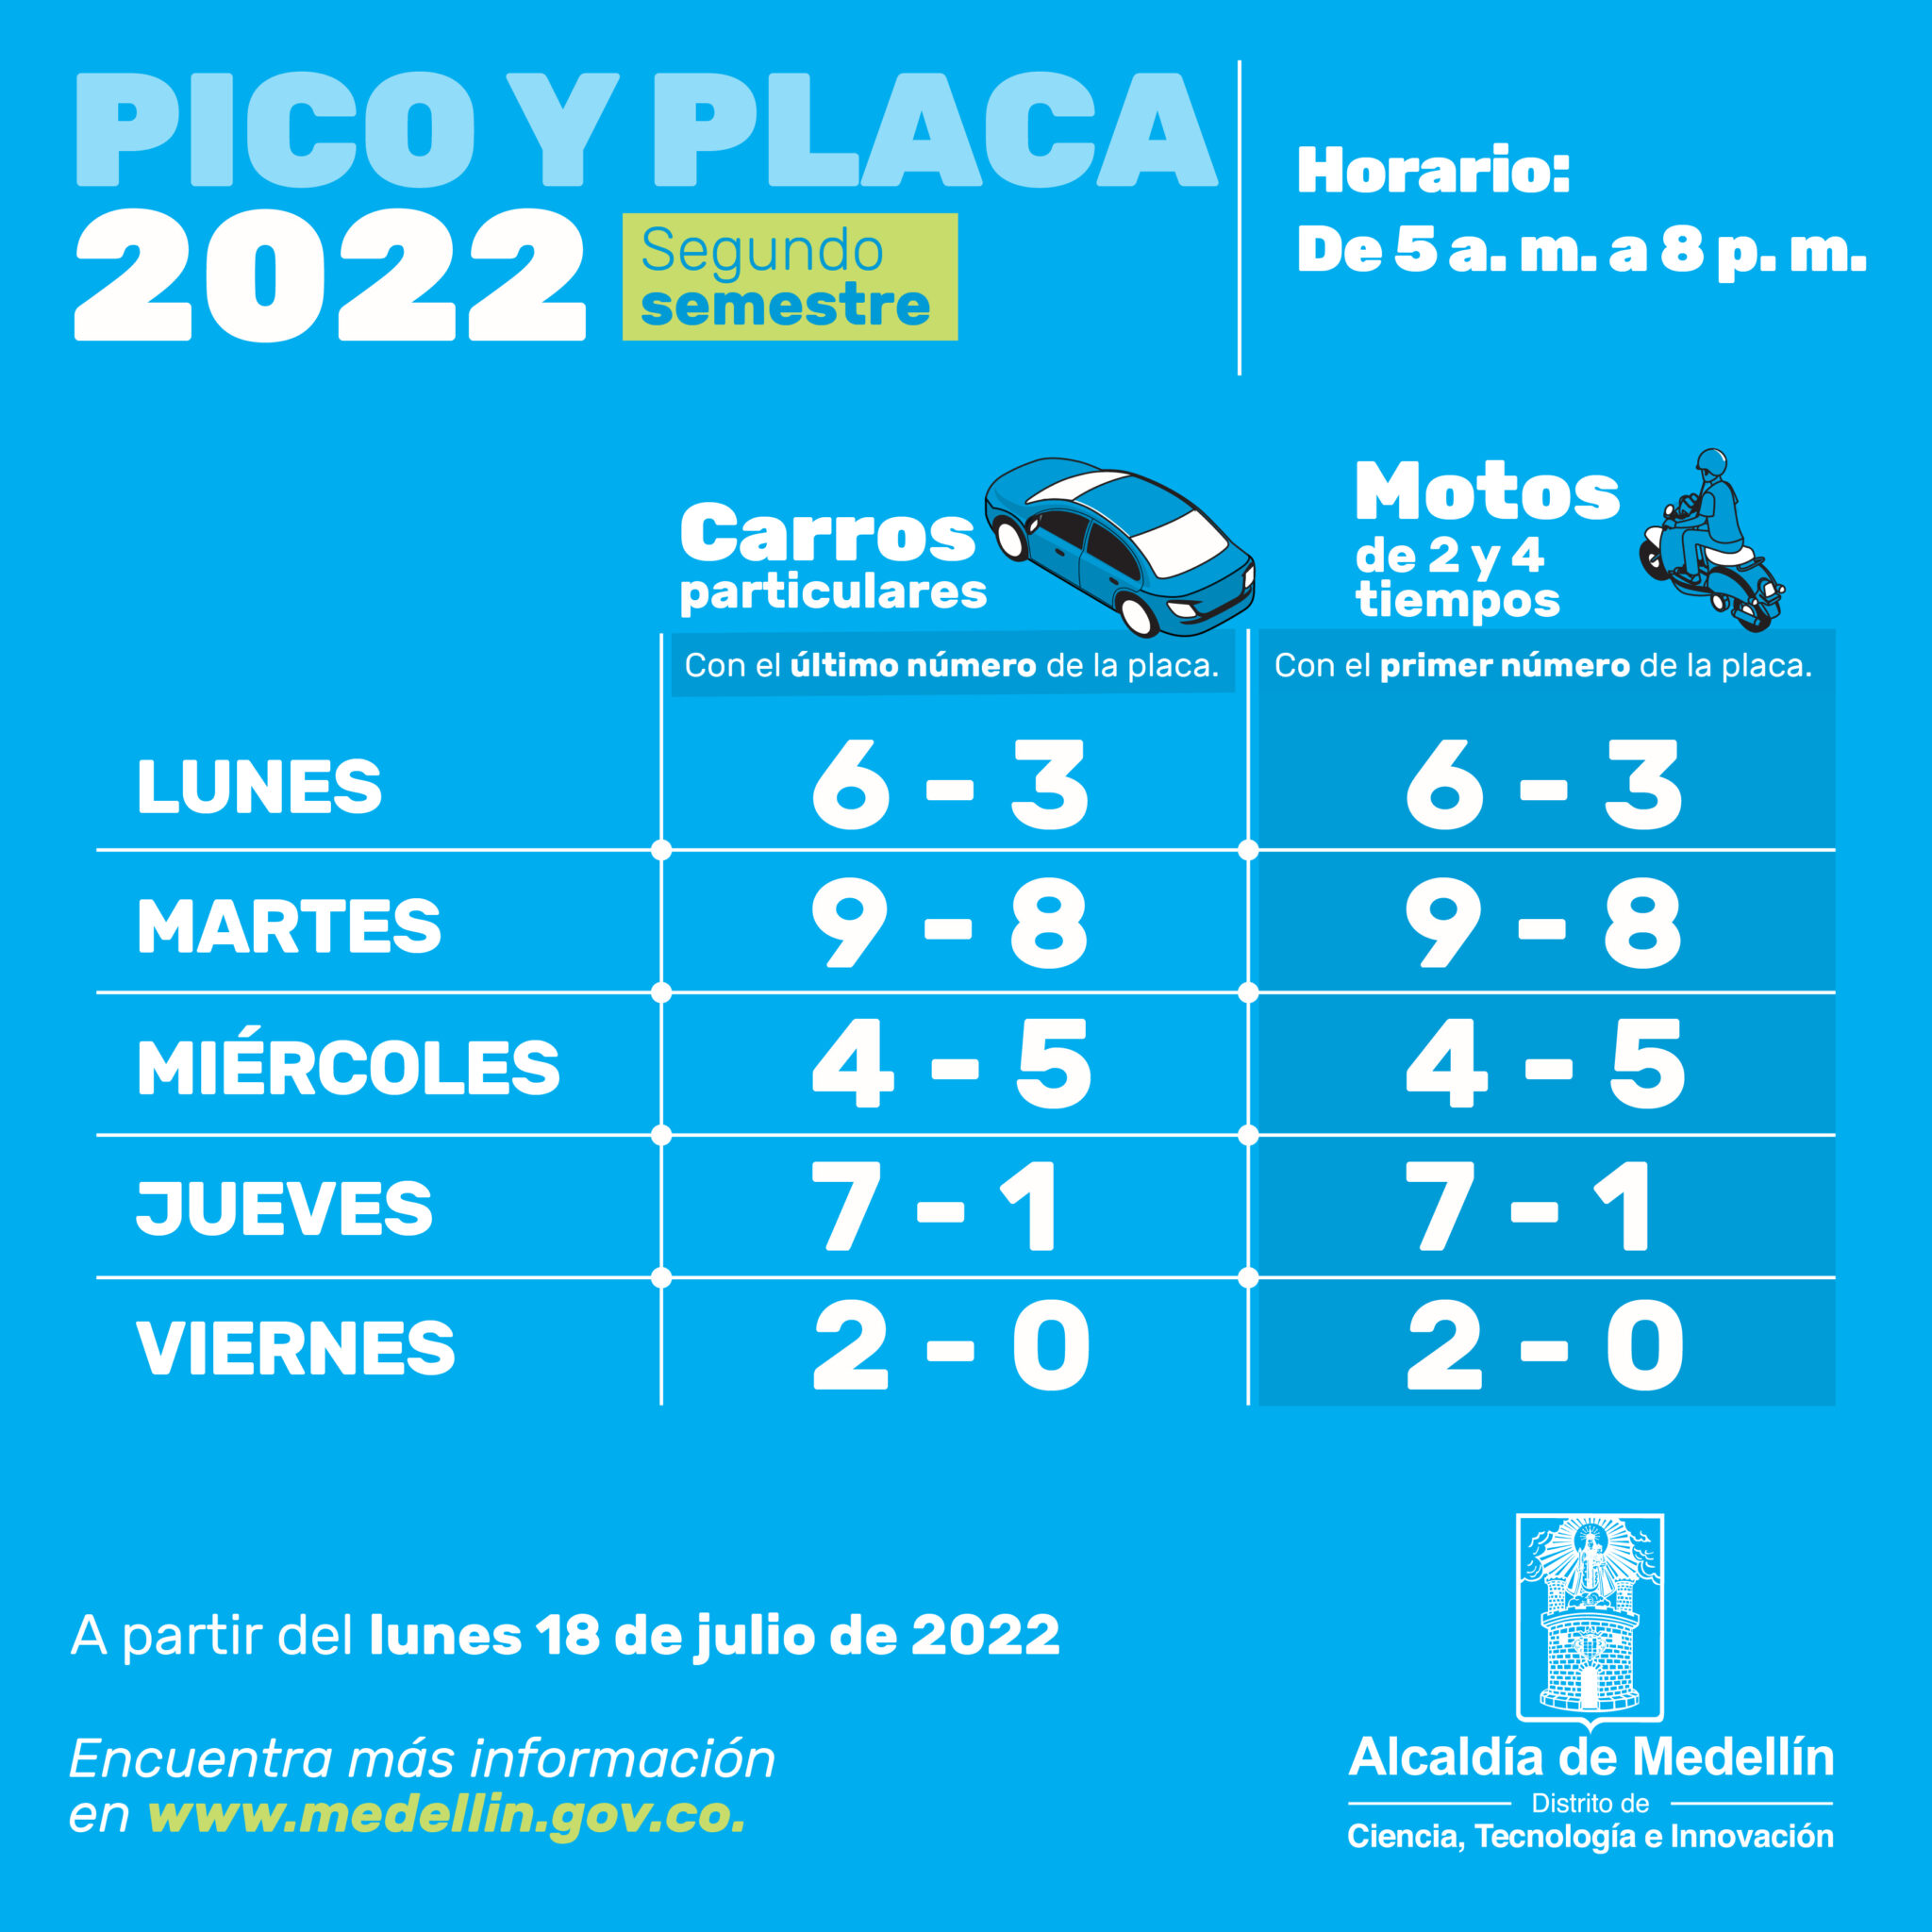 Pico y placa 2022 - Segundo semestre